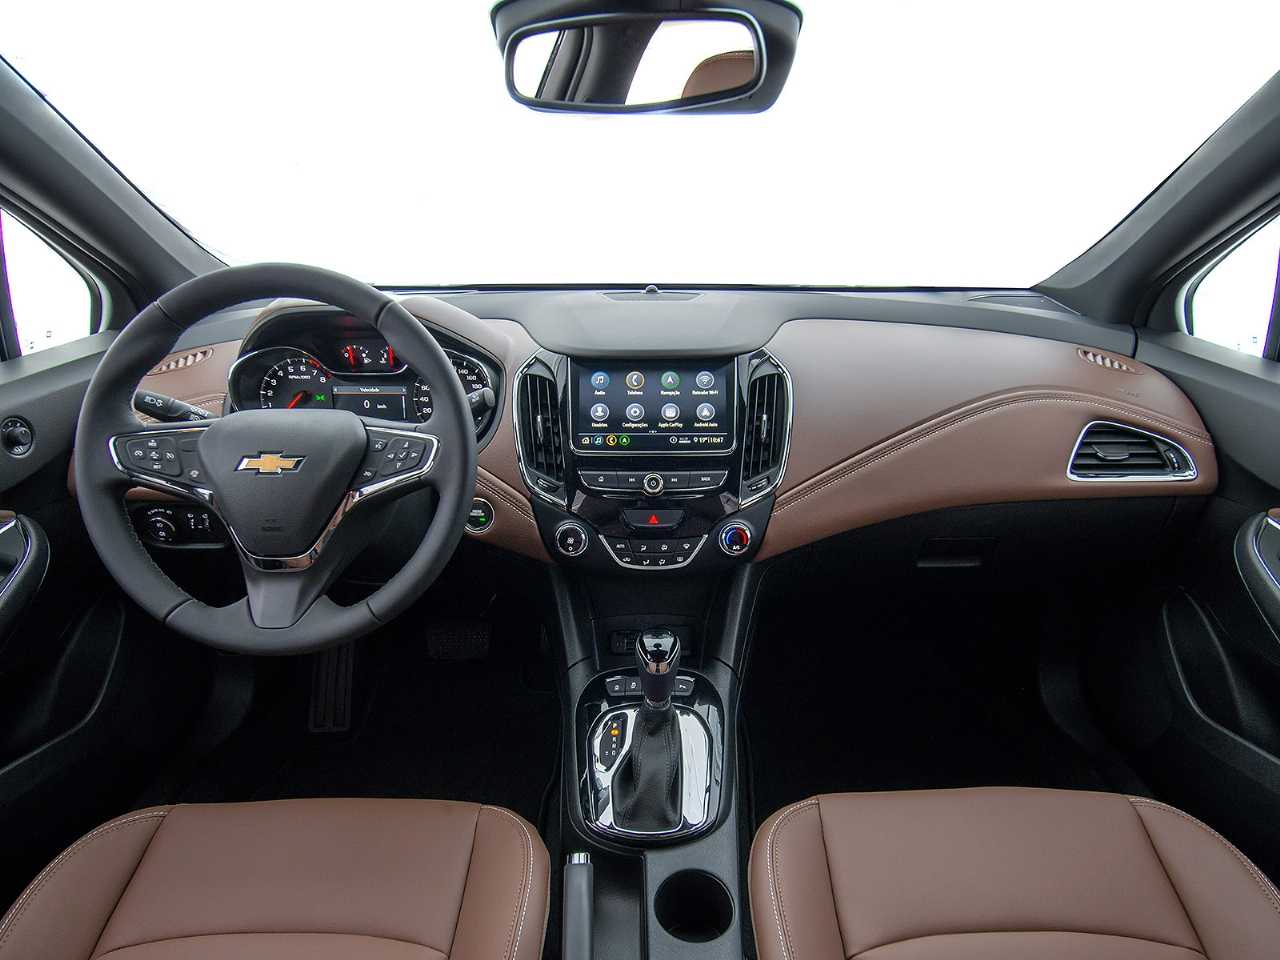 ChevroletCruze 2020 - painel